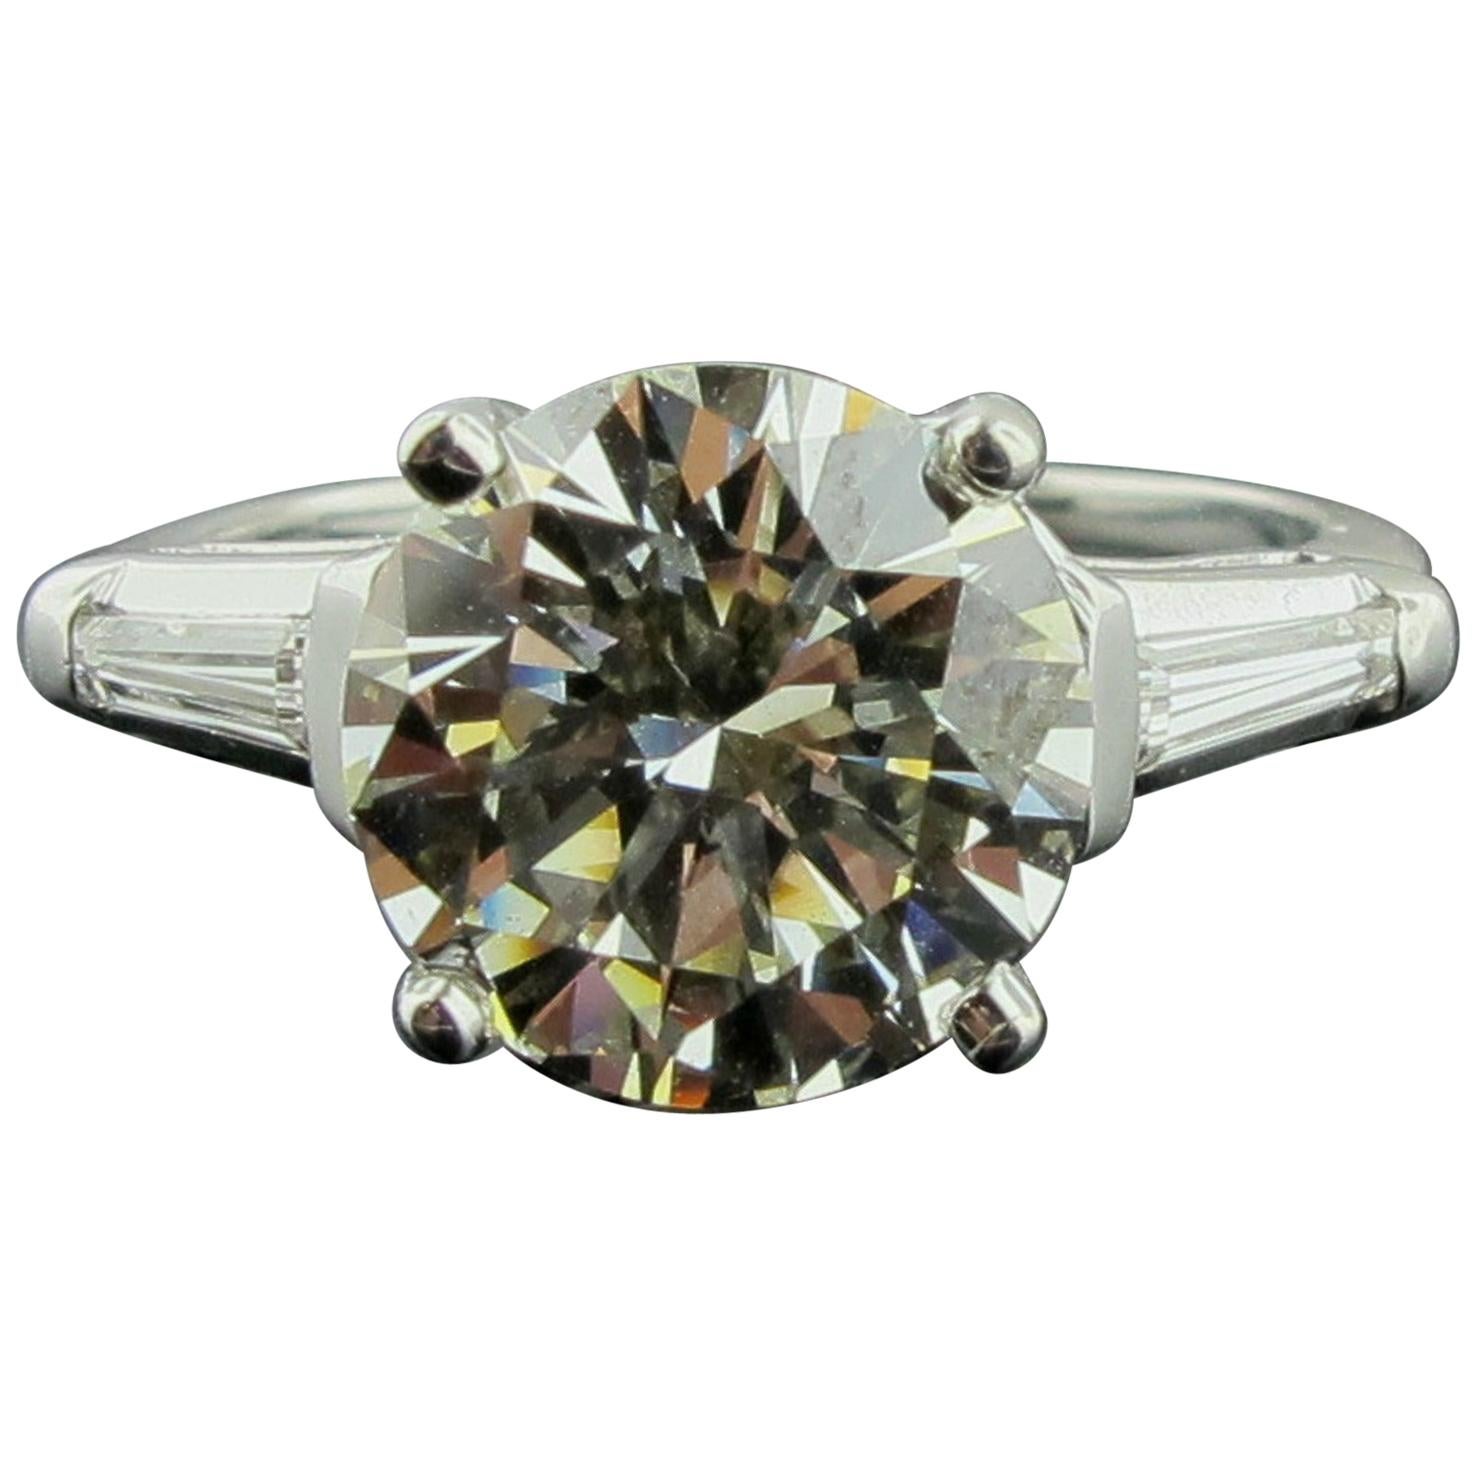 3.75 Round Brilliant Cut Diamond Ring in Platinum